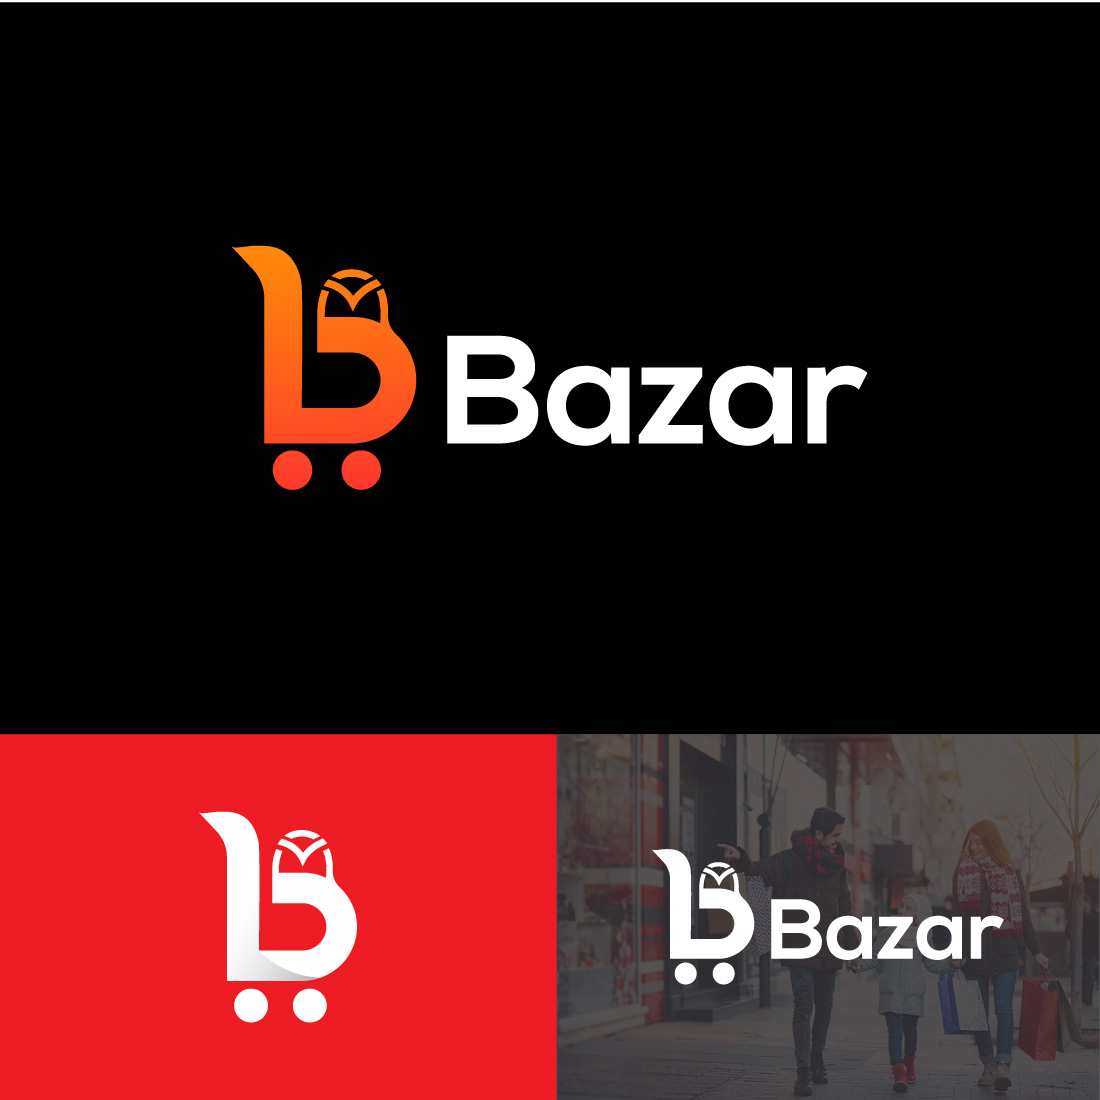 Bazar Shop - Letter B Logo facebook image.